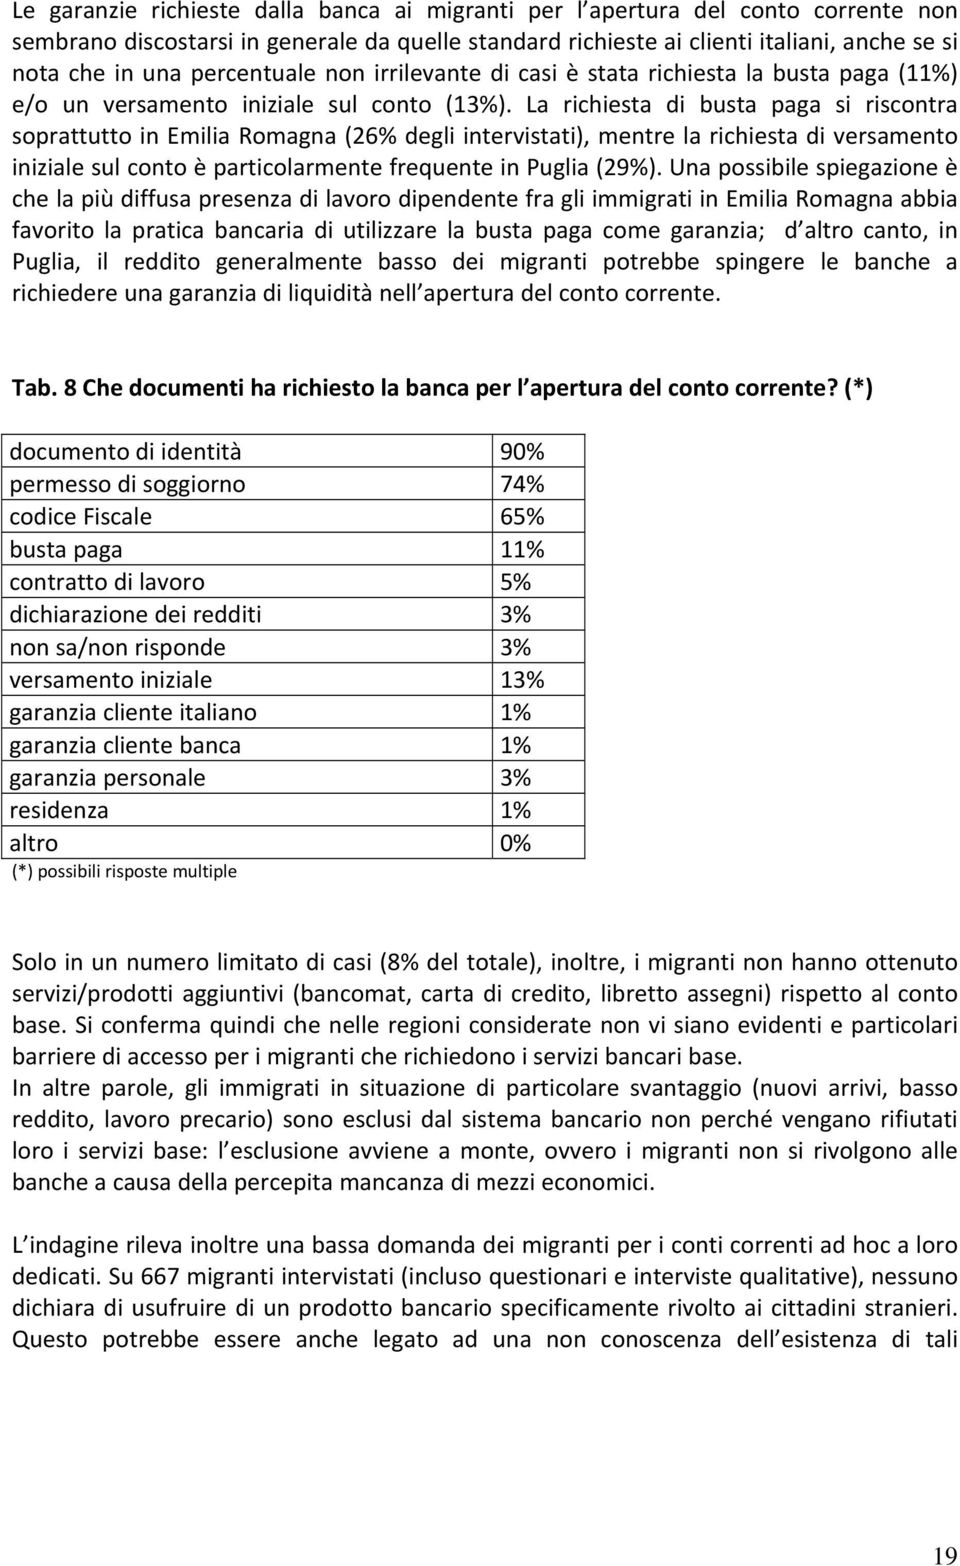 La richiesta di busta paga si riscontra soprattutto in Emilia Romagna (26% degli intervistati), mentre la richiesta di versamento iniziale sul conto è particolarmente frequente in Puglia (29%).